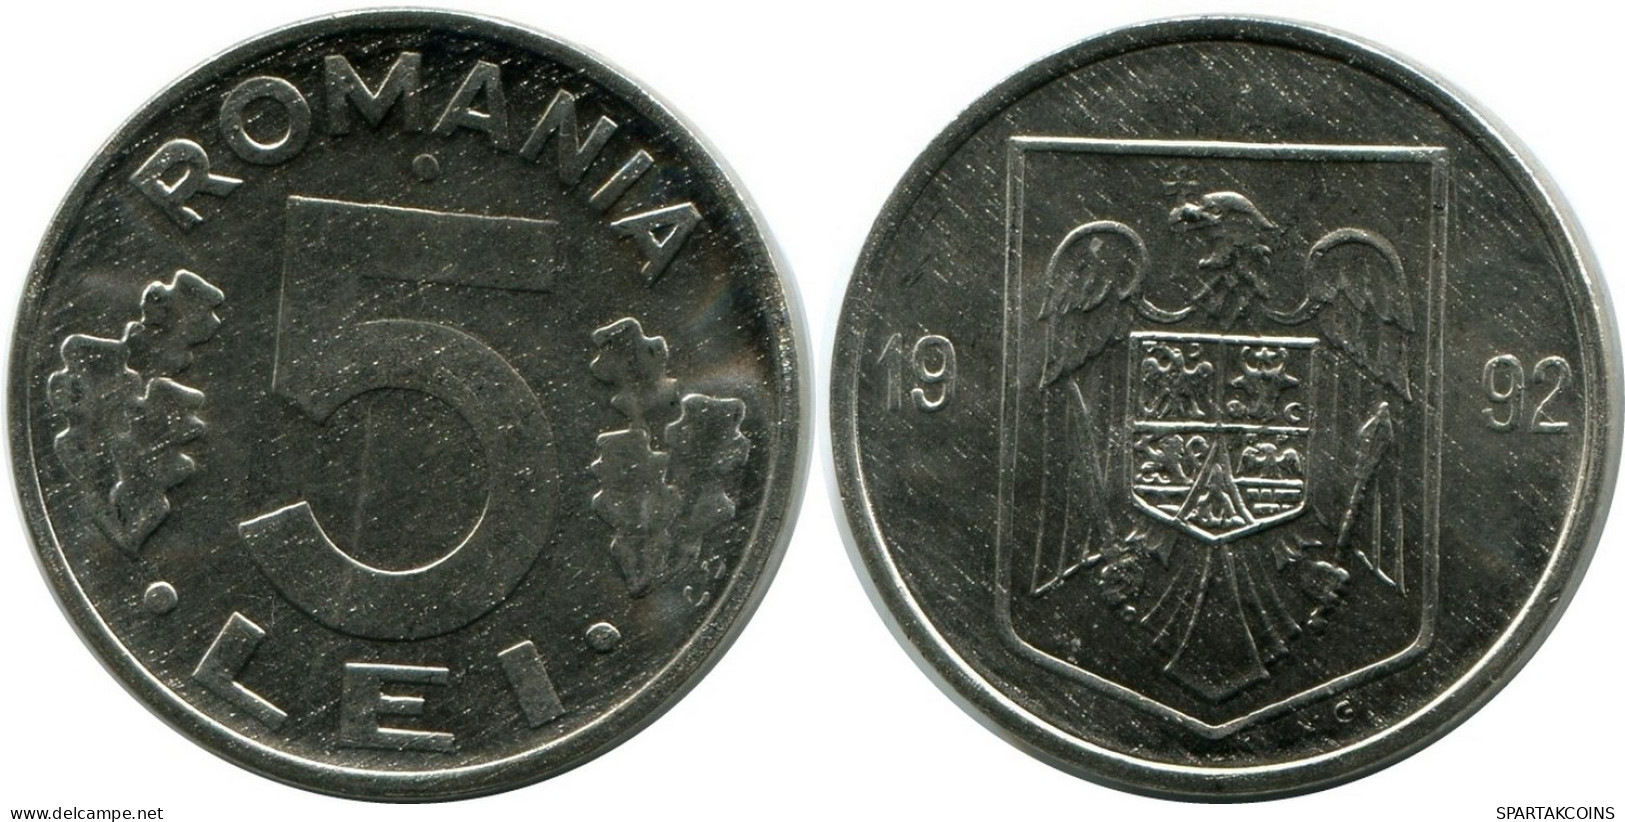 5 LEI 1992 ROMANIA UNC Eagle Coin #M10392.U.A - Romania